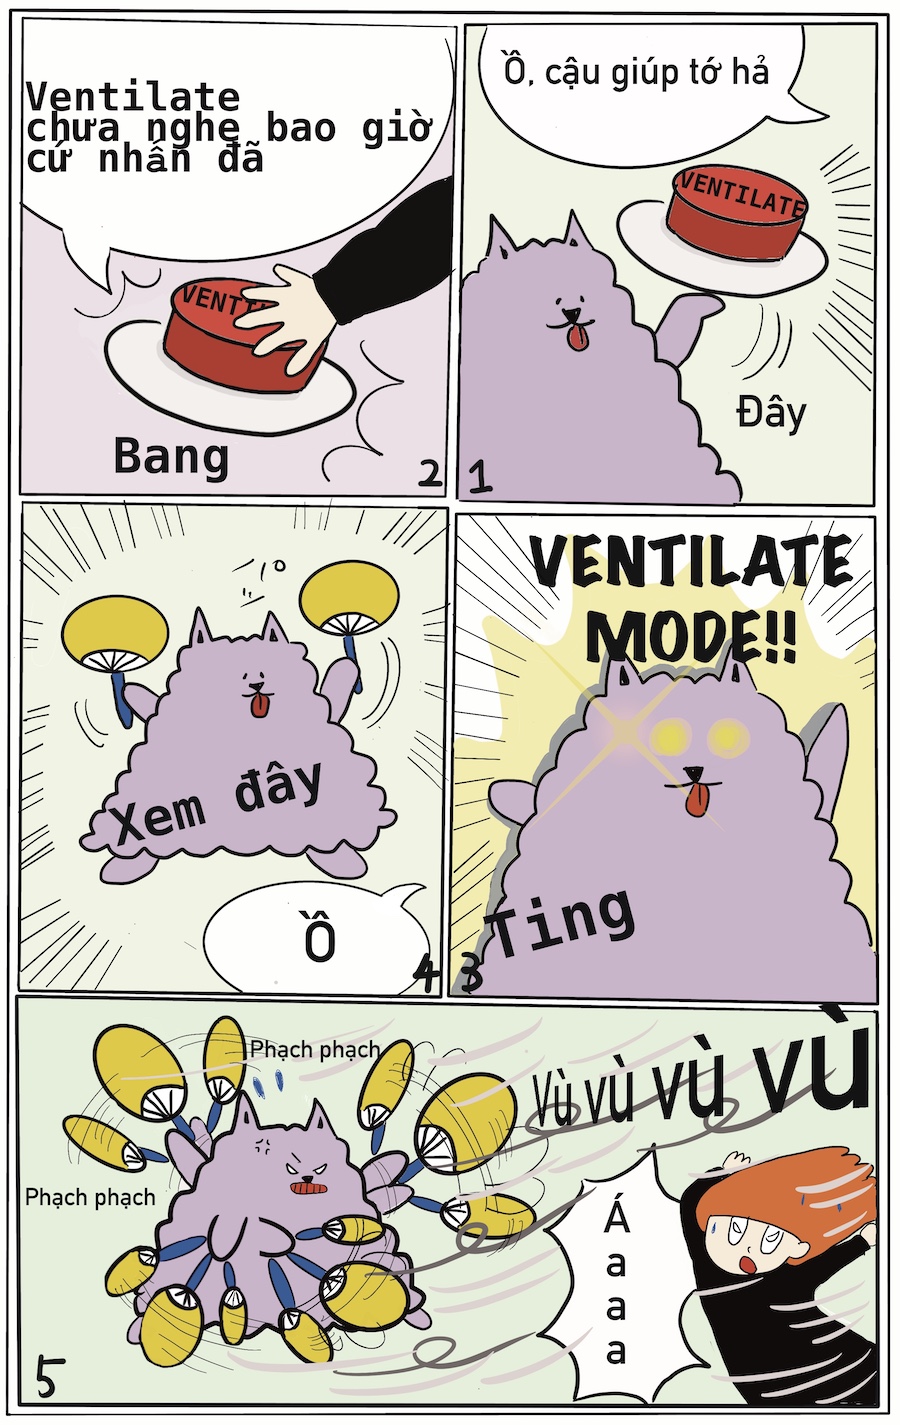 ventilate_vn2